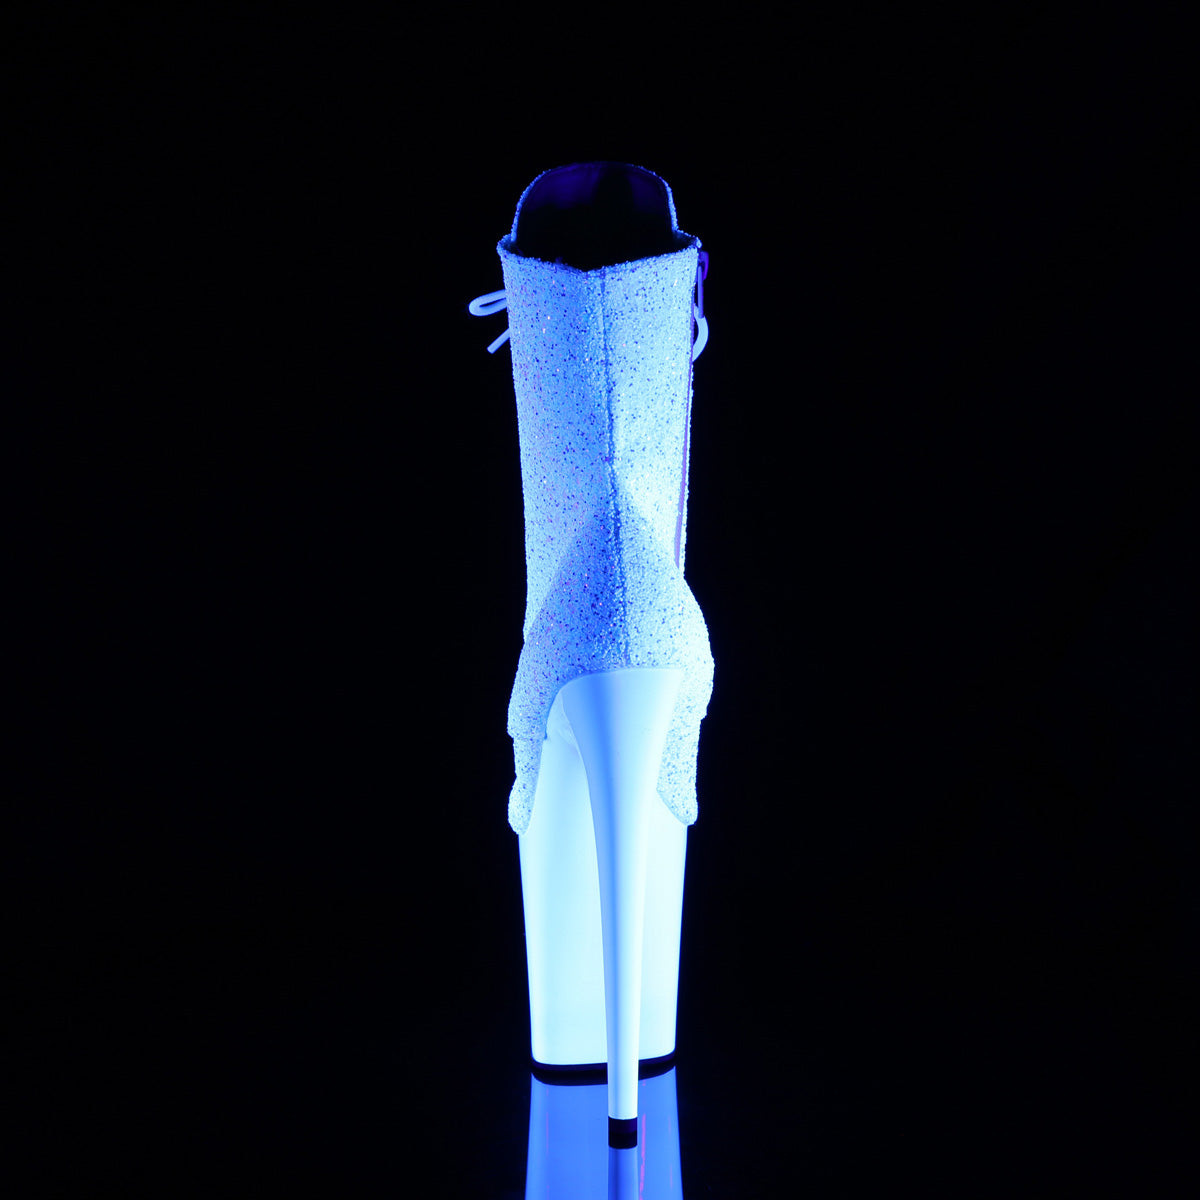 8 Inch Heel FLAMINGO-1020LG Neon White Glitter